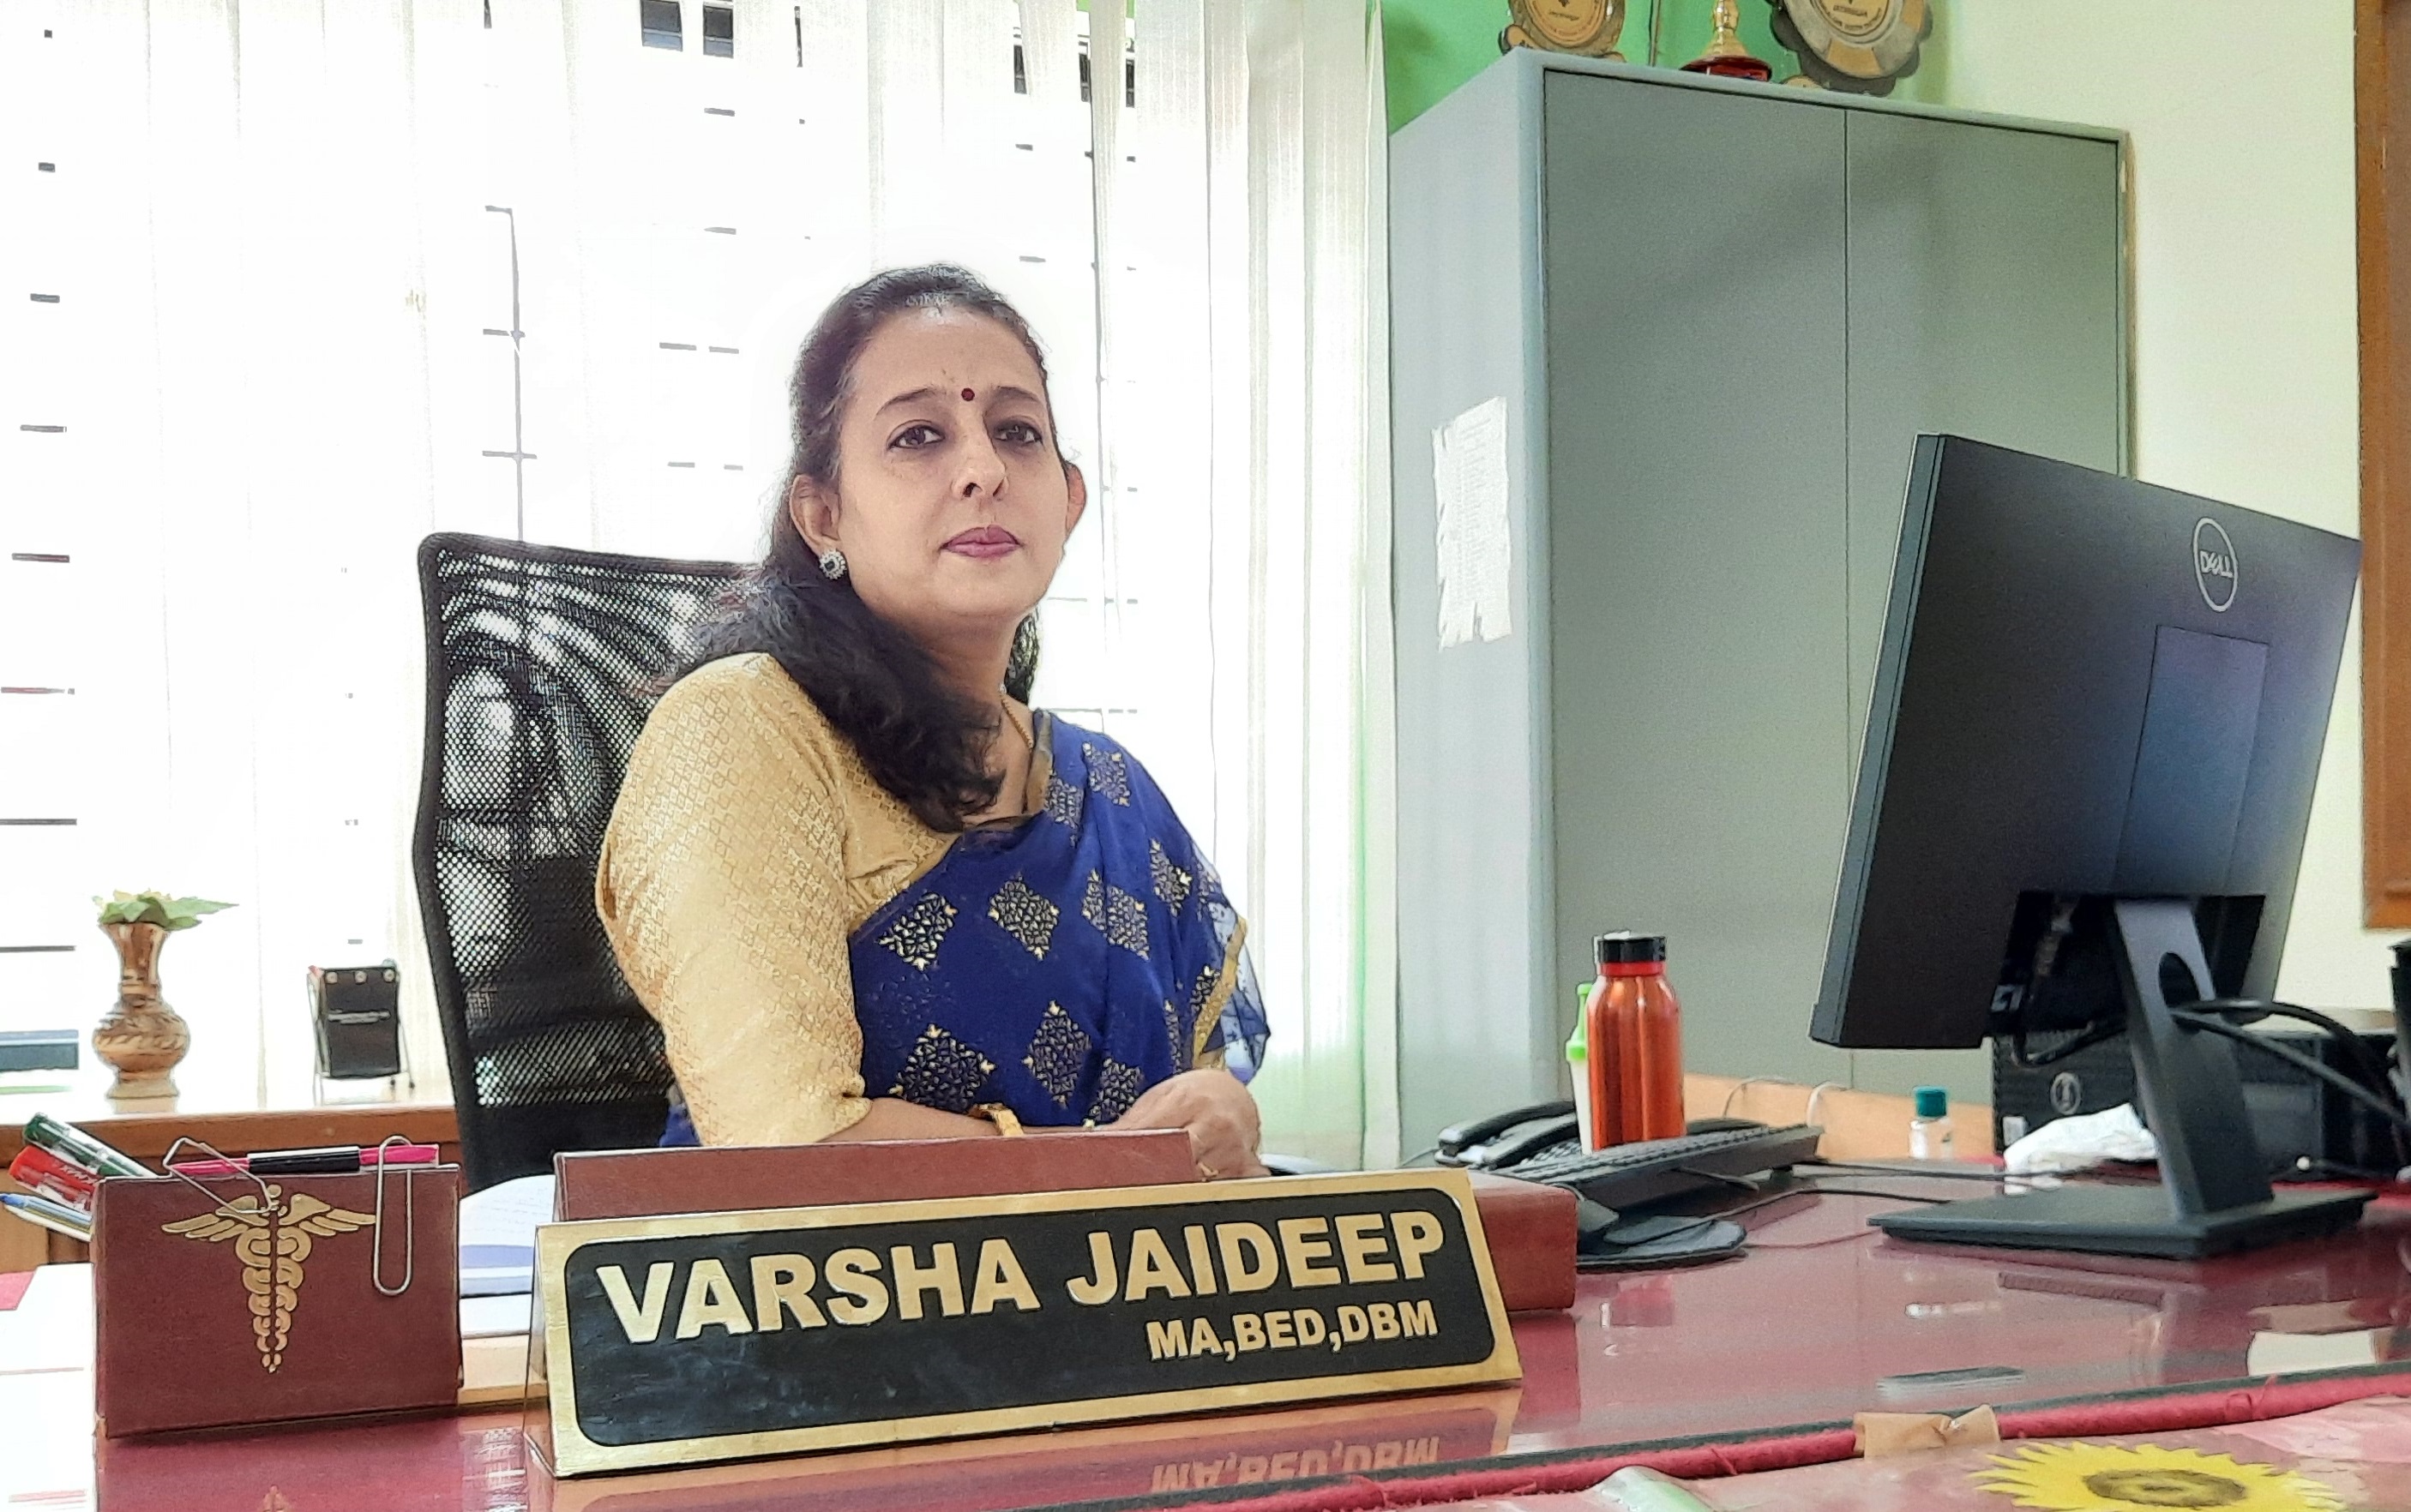 Mrs. Varsha Jaideep